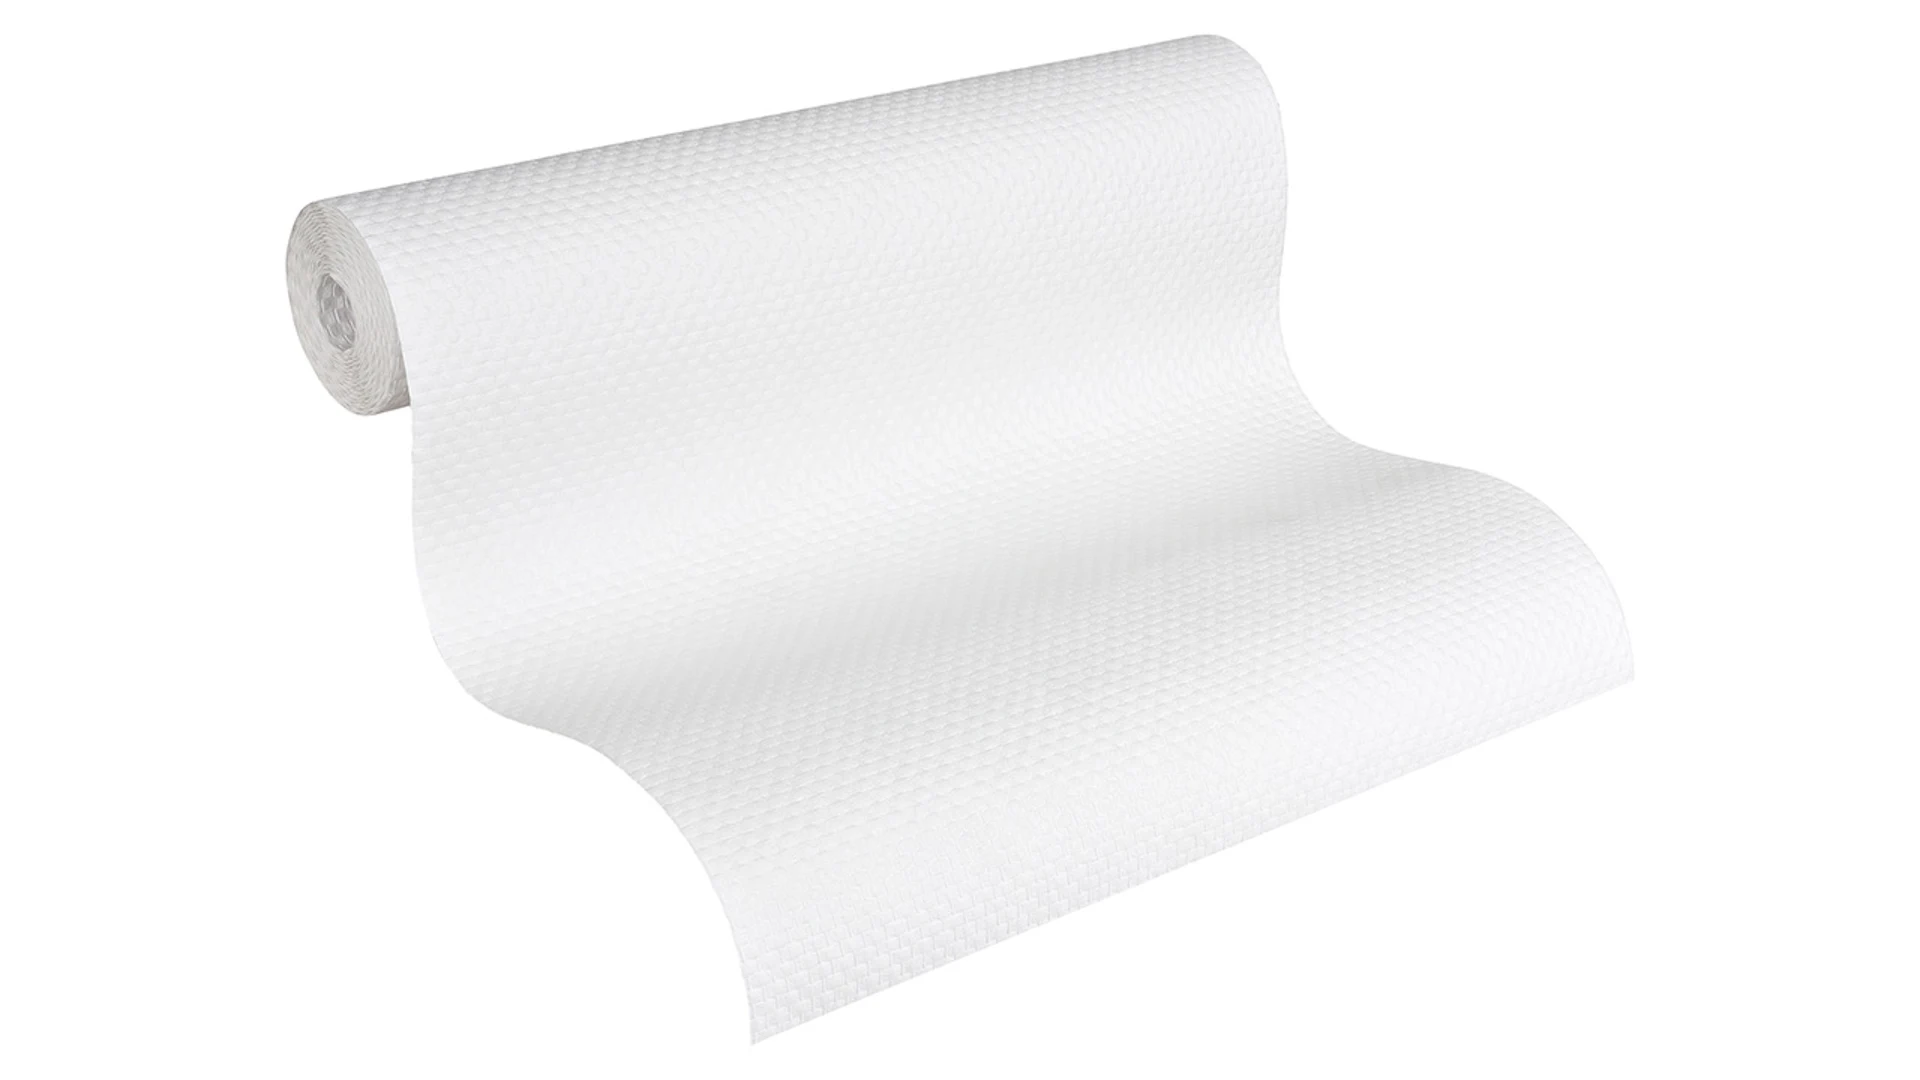 carta da parati in tessuto non tessuto bianco punti classici Simply White 217